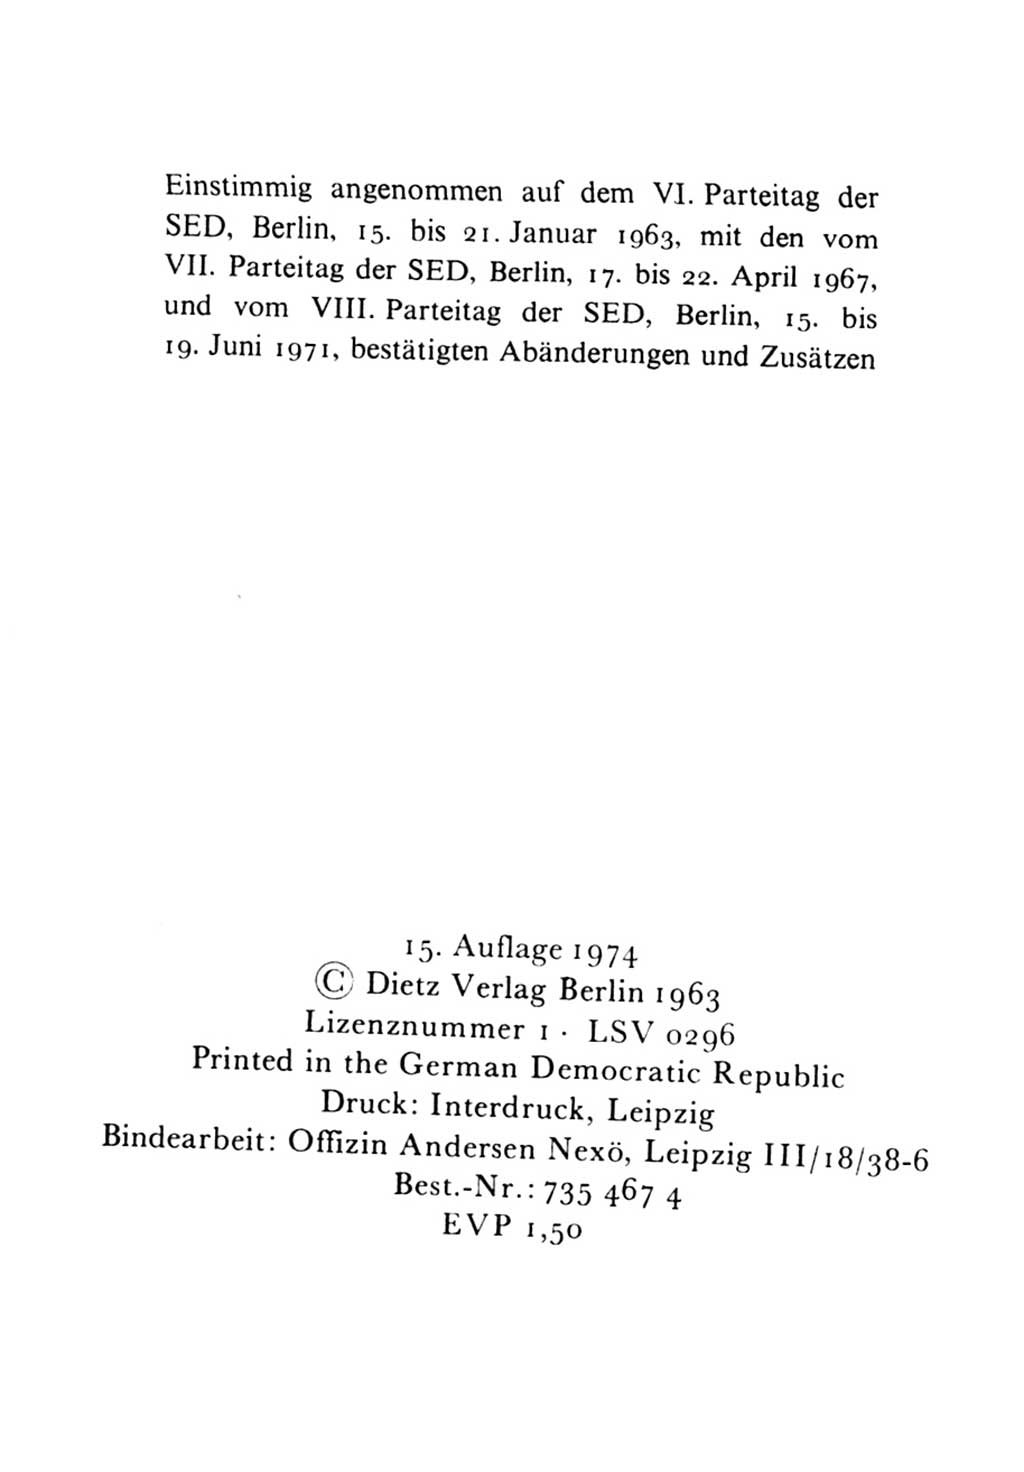 Statut der Sozialistischen Einheitspartei Deutschlands (SED) 1971, Seite 4 (St. SED DDR 1971, S. 4)